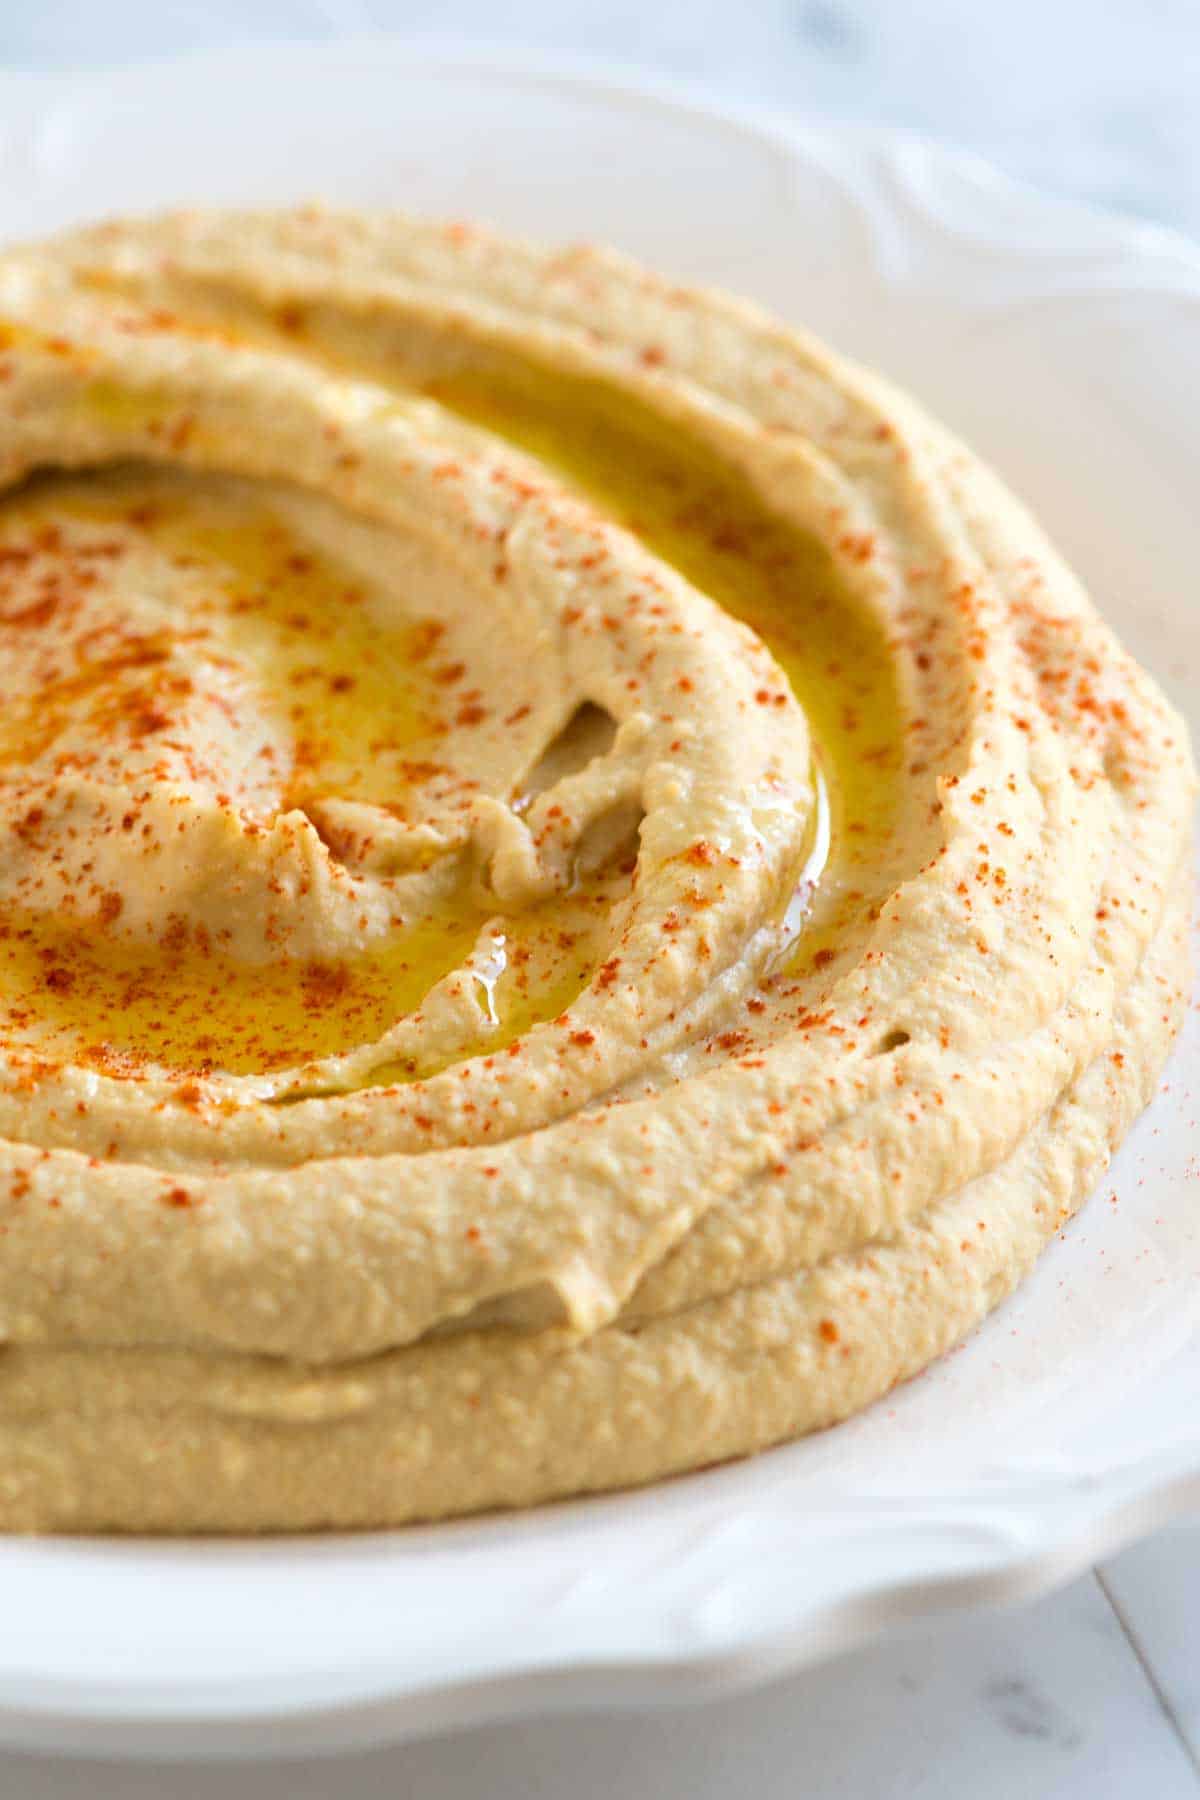 zbliżenie Hummusu na białym talerzu i przyozdobione oliwą z oliwek i papryką.